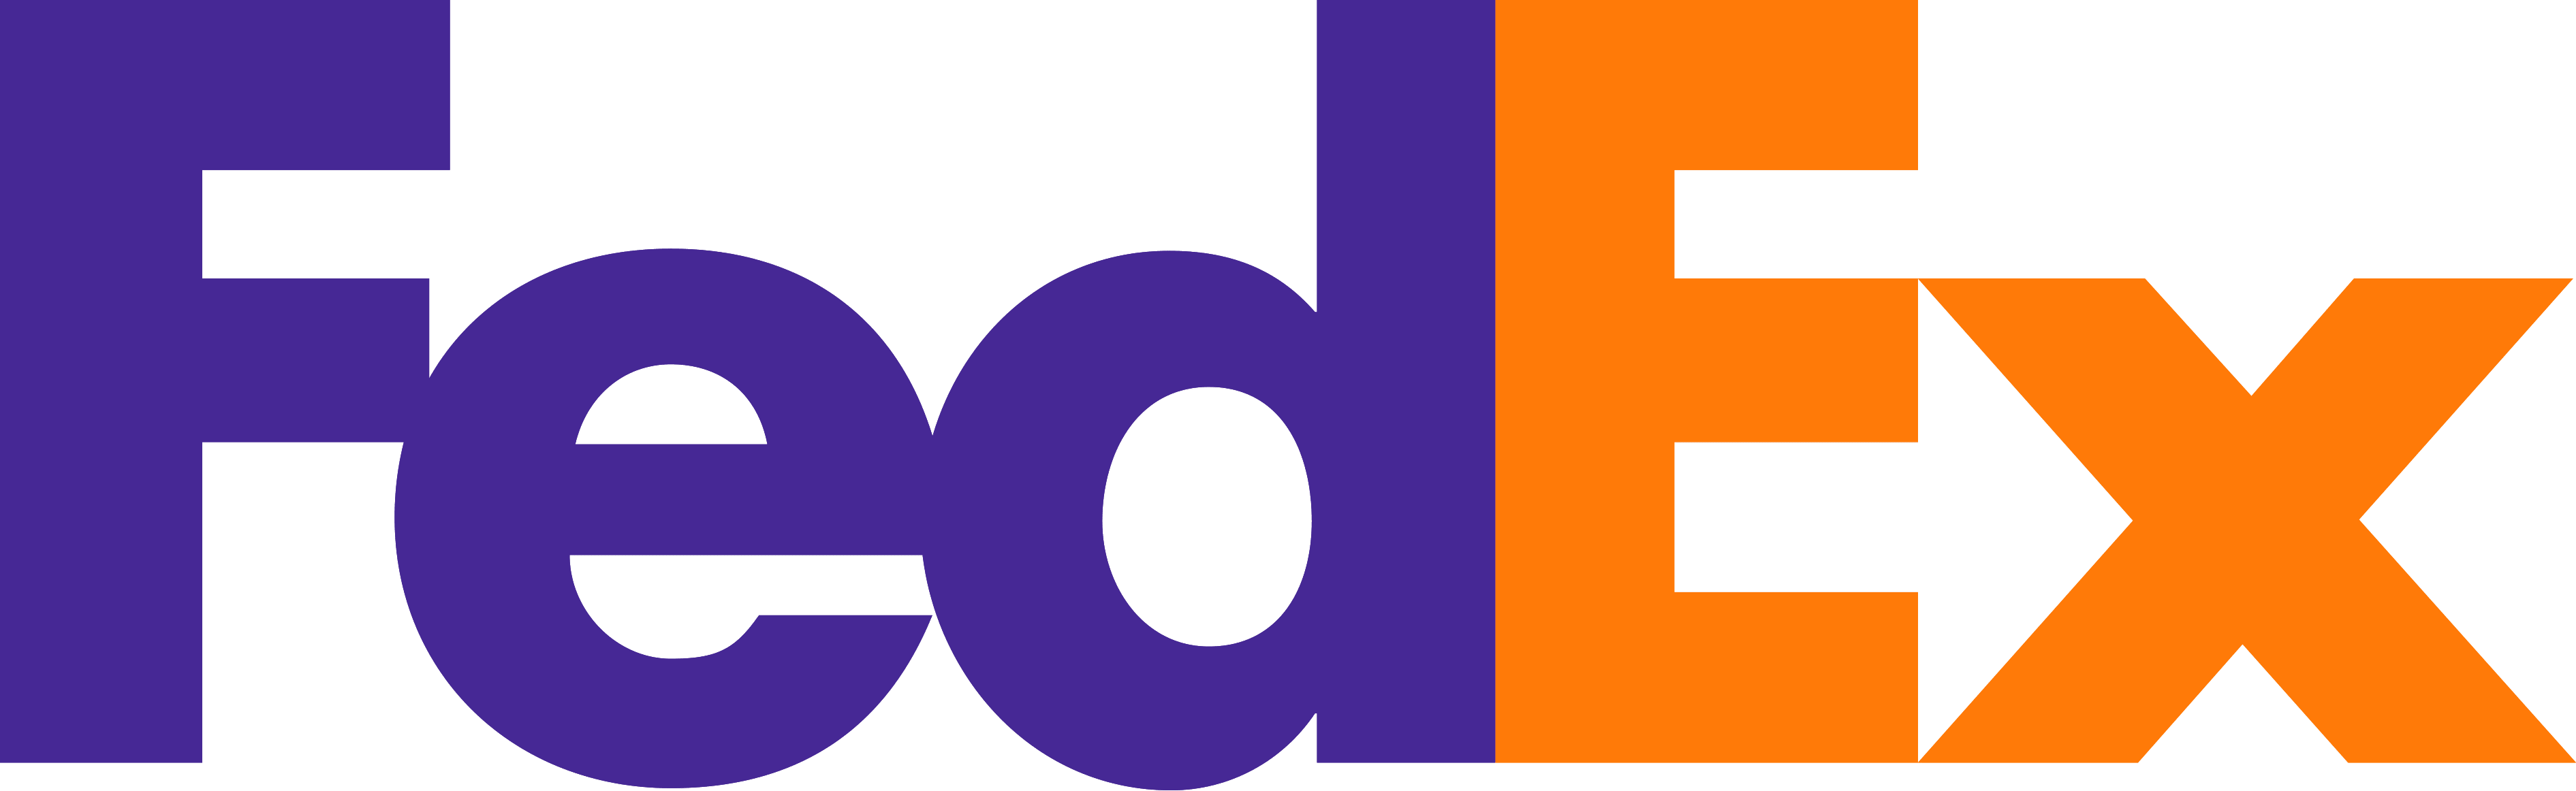 FedEx-Logo.png